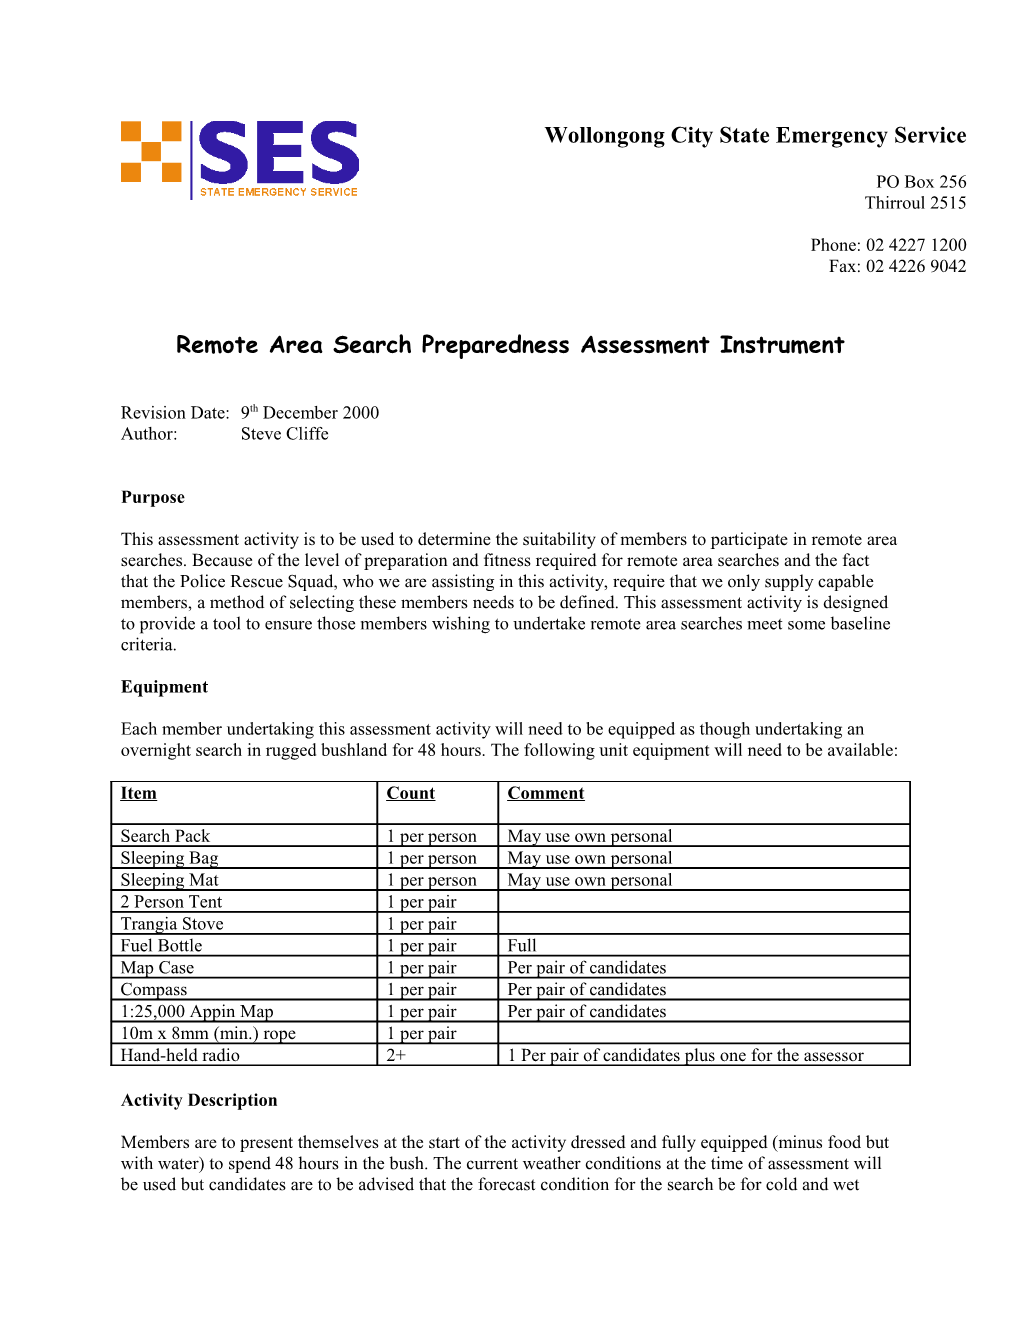 Remote Area Search Preparedness Assessment Instrument